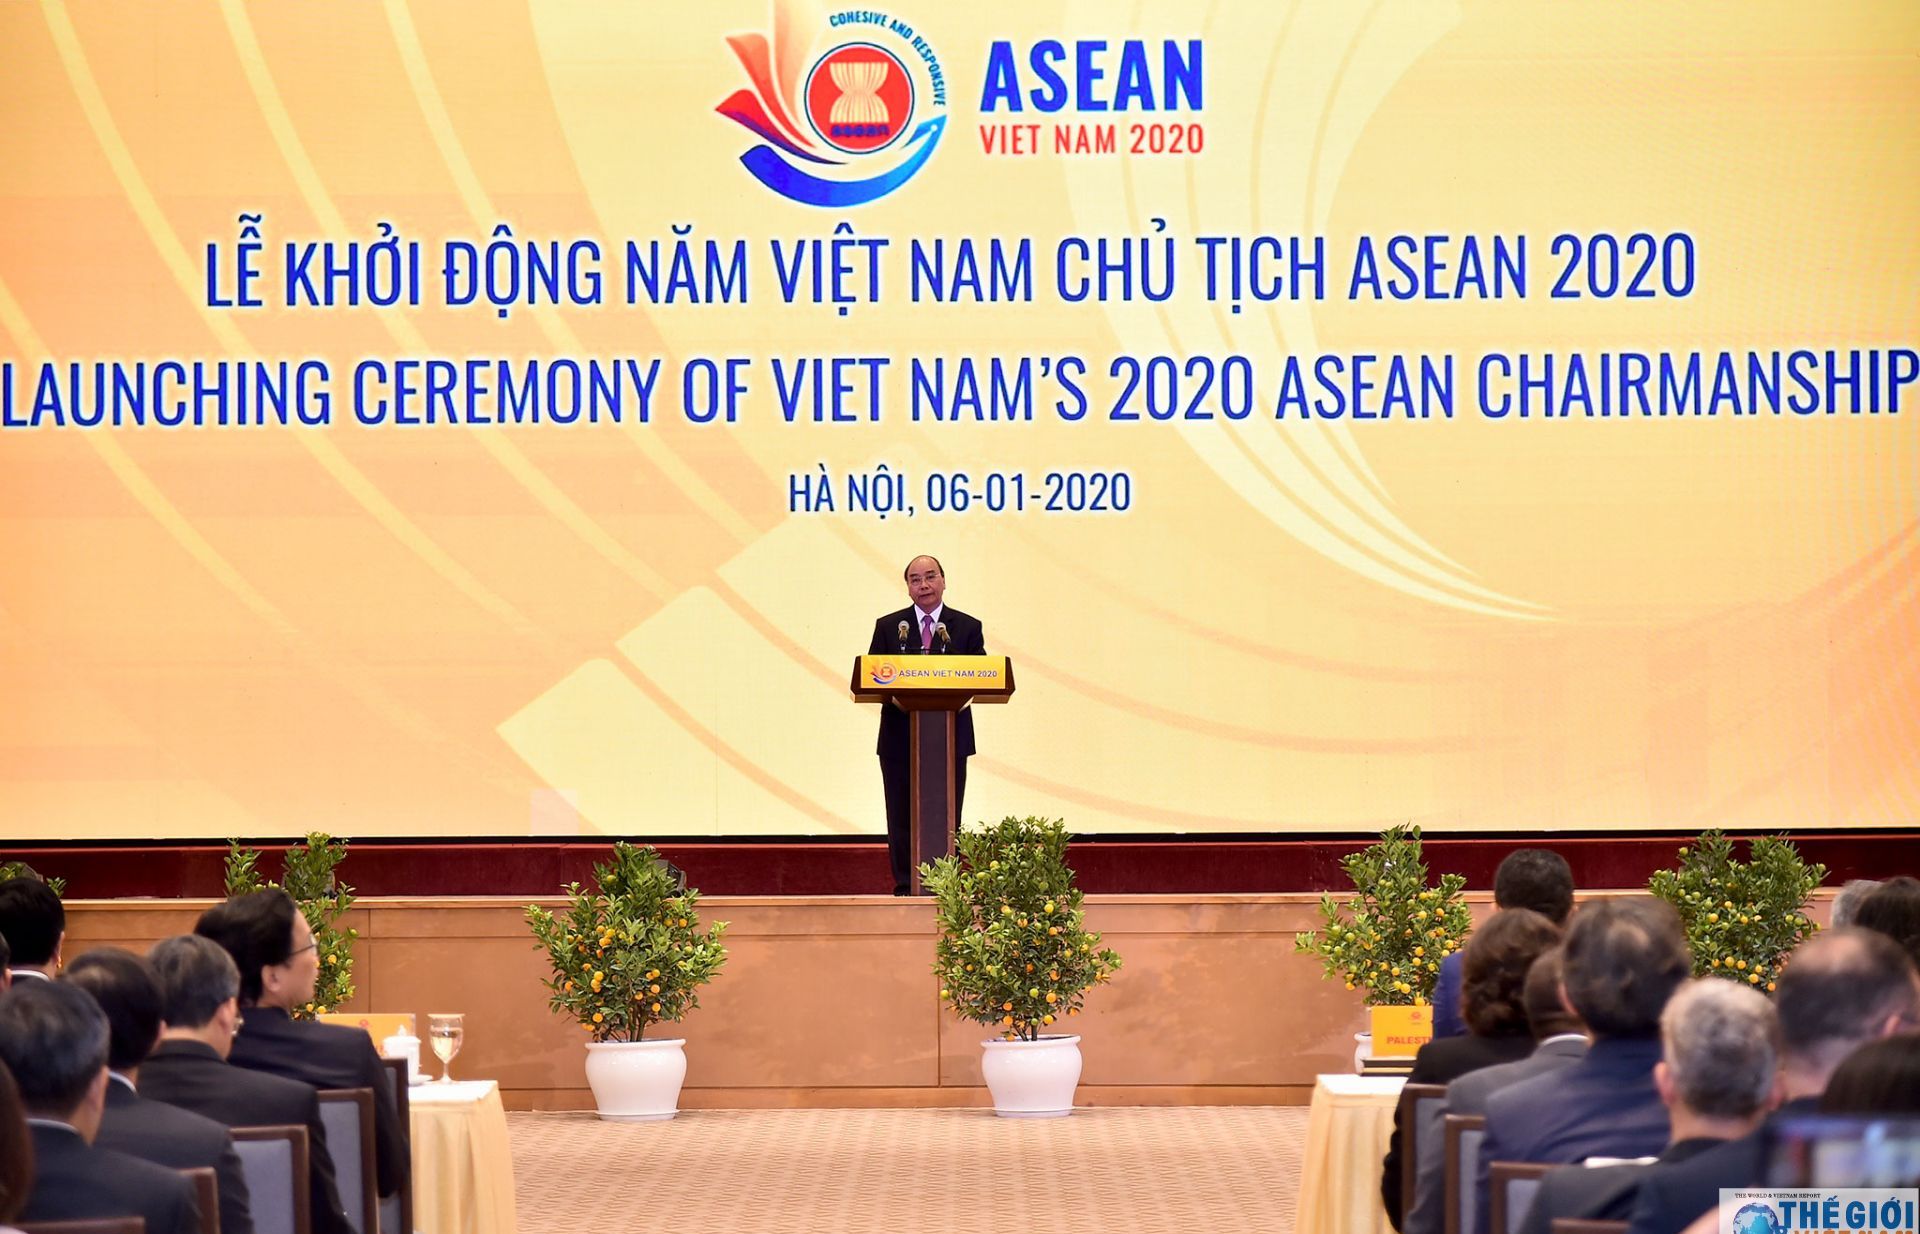 Chào mừng đến với ASEAN - Việt Nam 2020